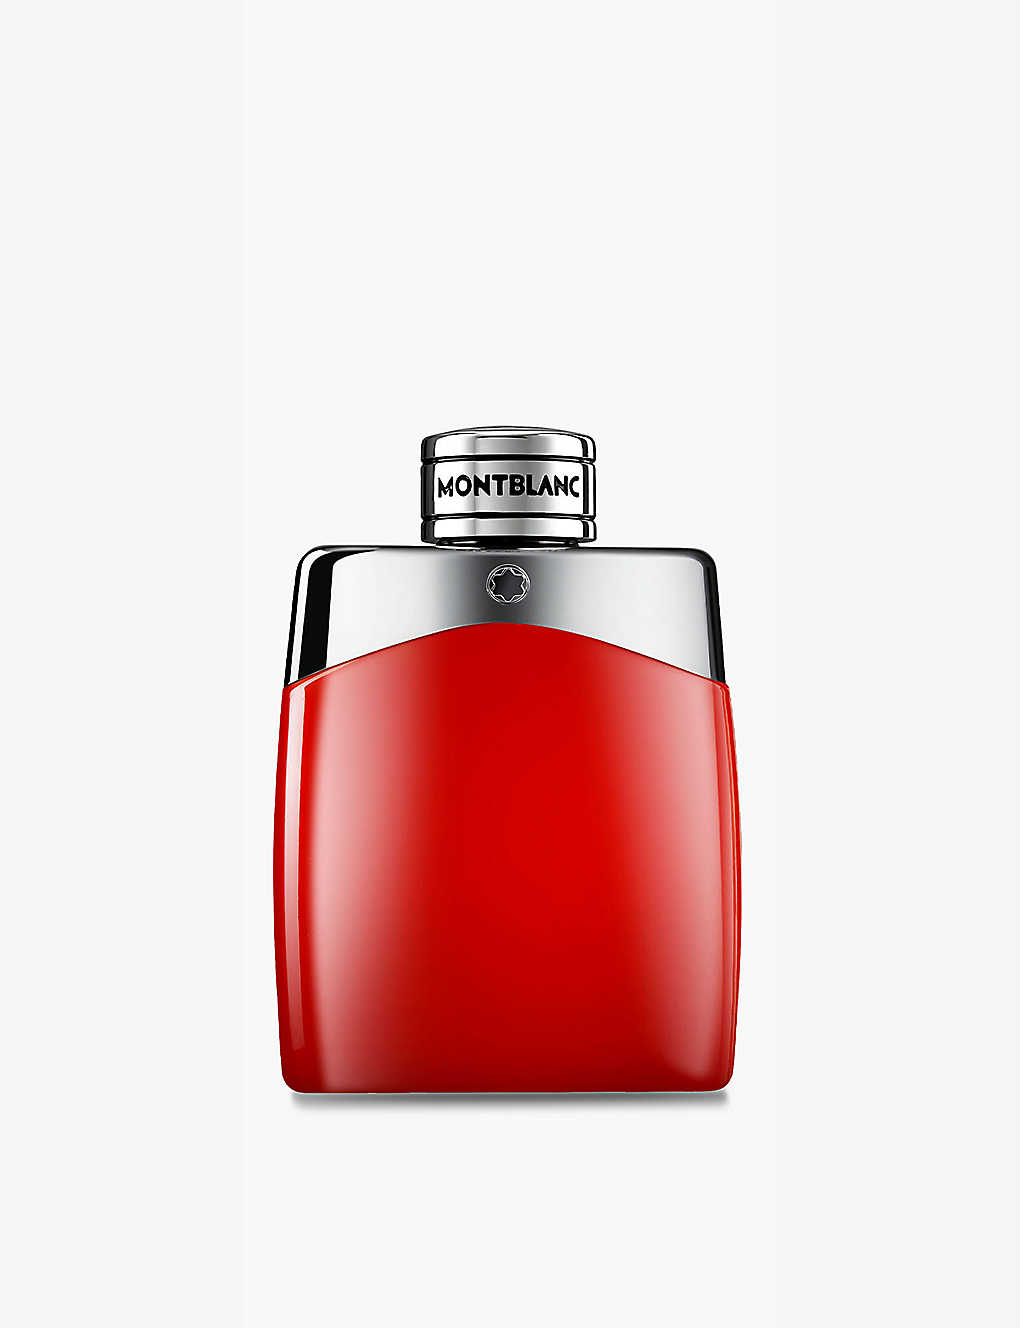 Montblanc Legend Red Eau De Parfum 100ml